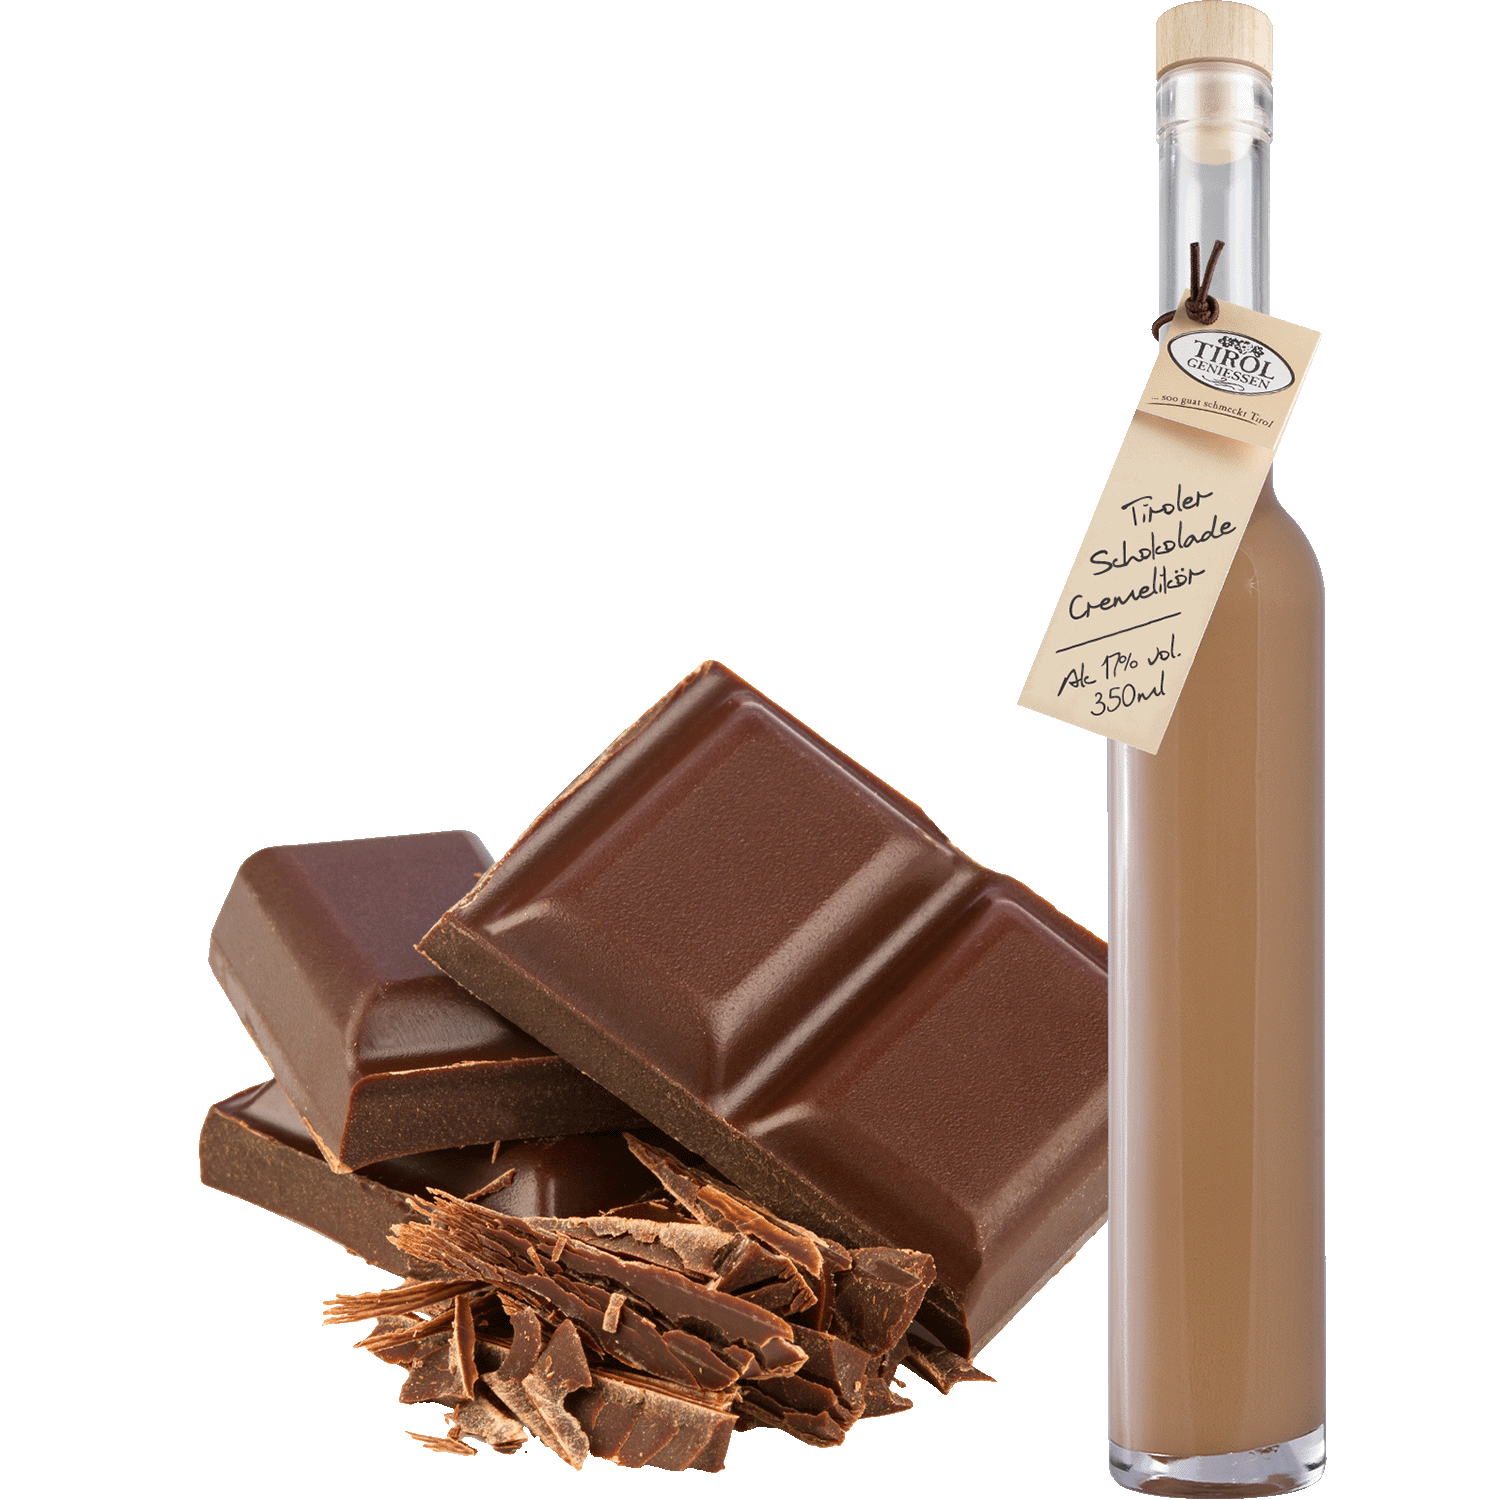 Schokolade Creme Likör in Geschenkflasche aus Österreich von Tirol Geniessen